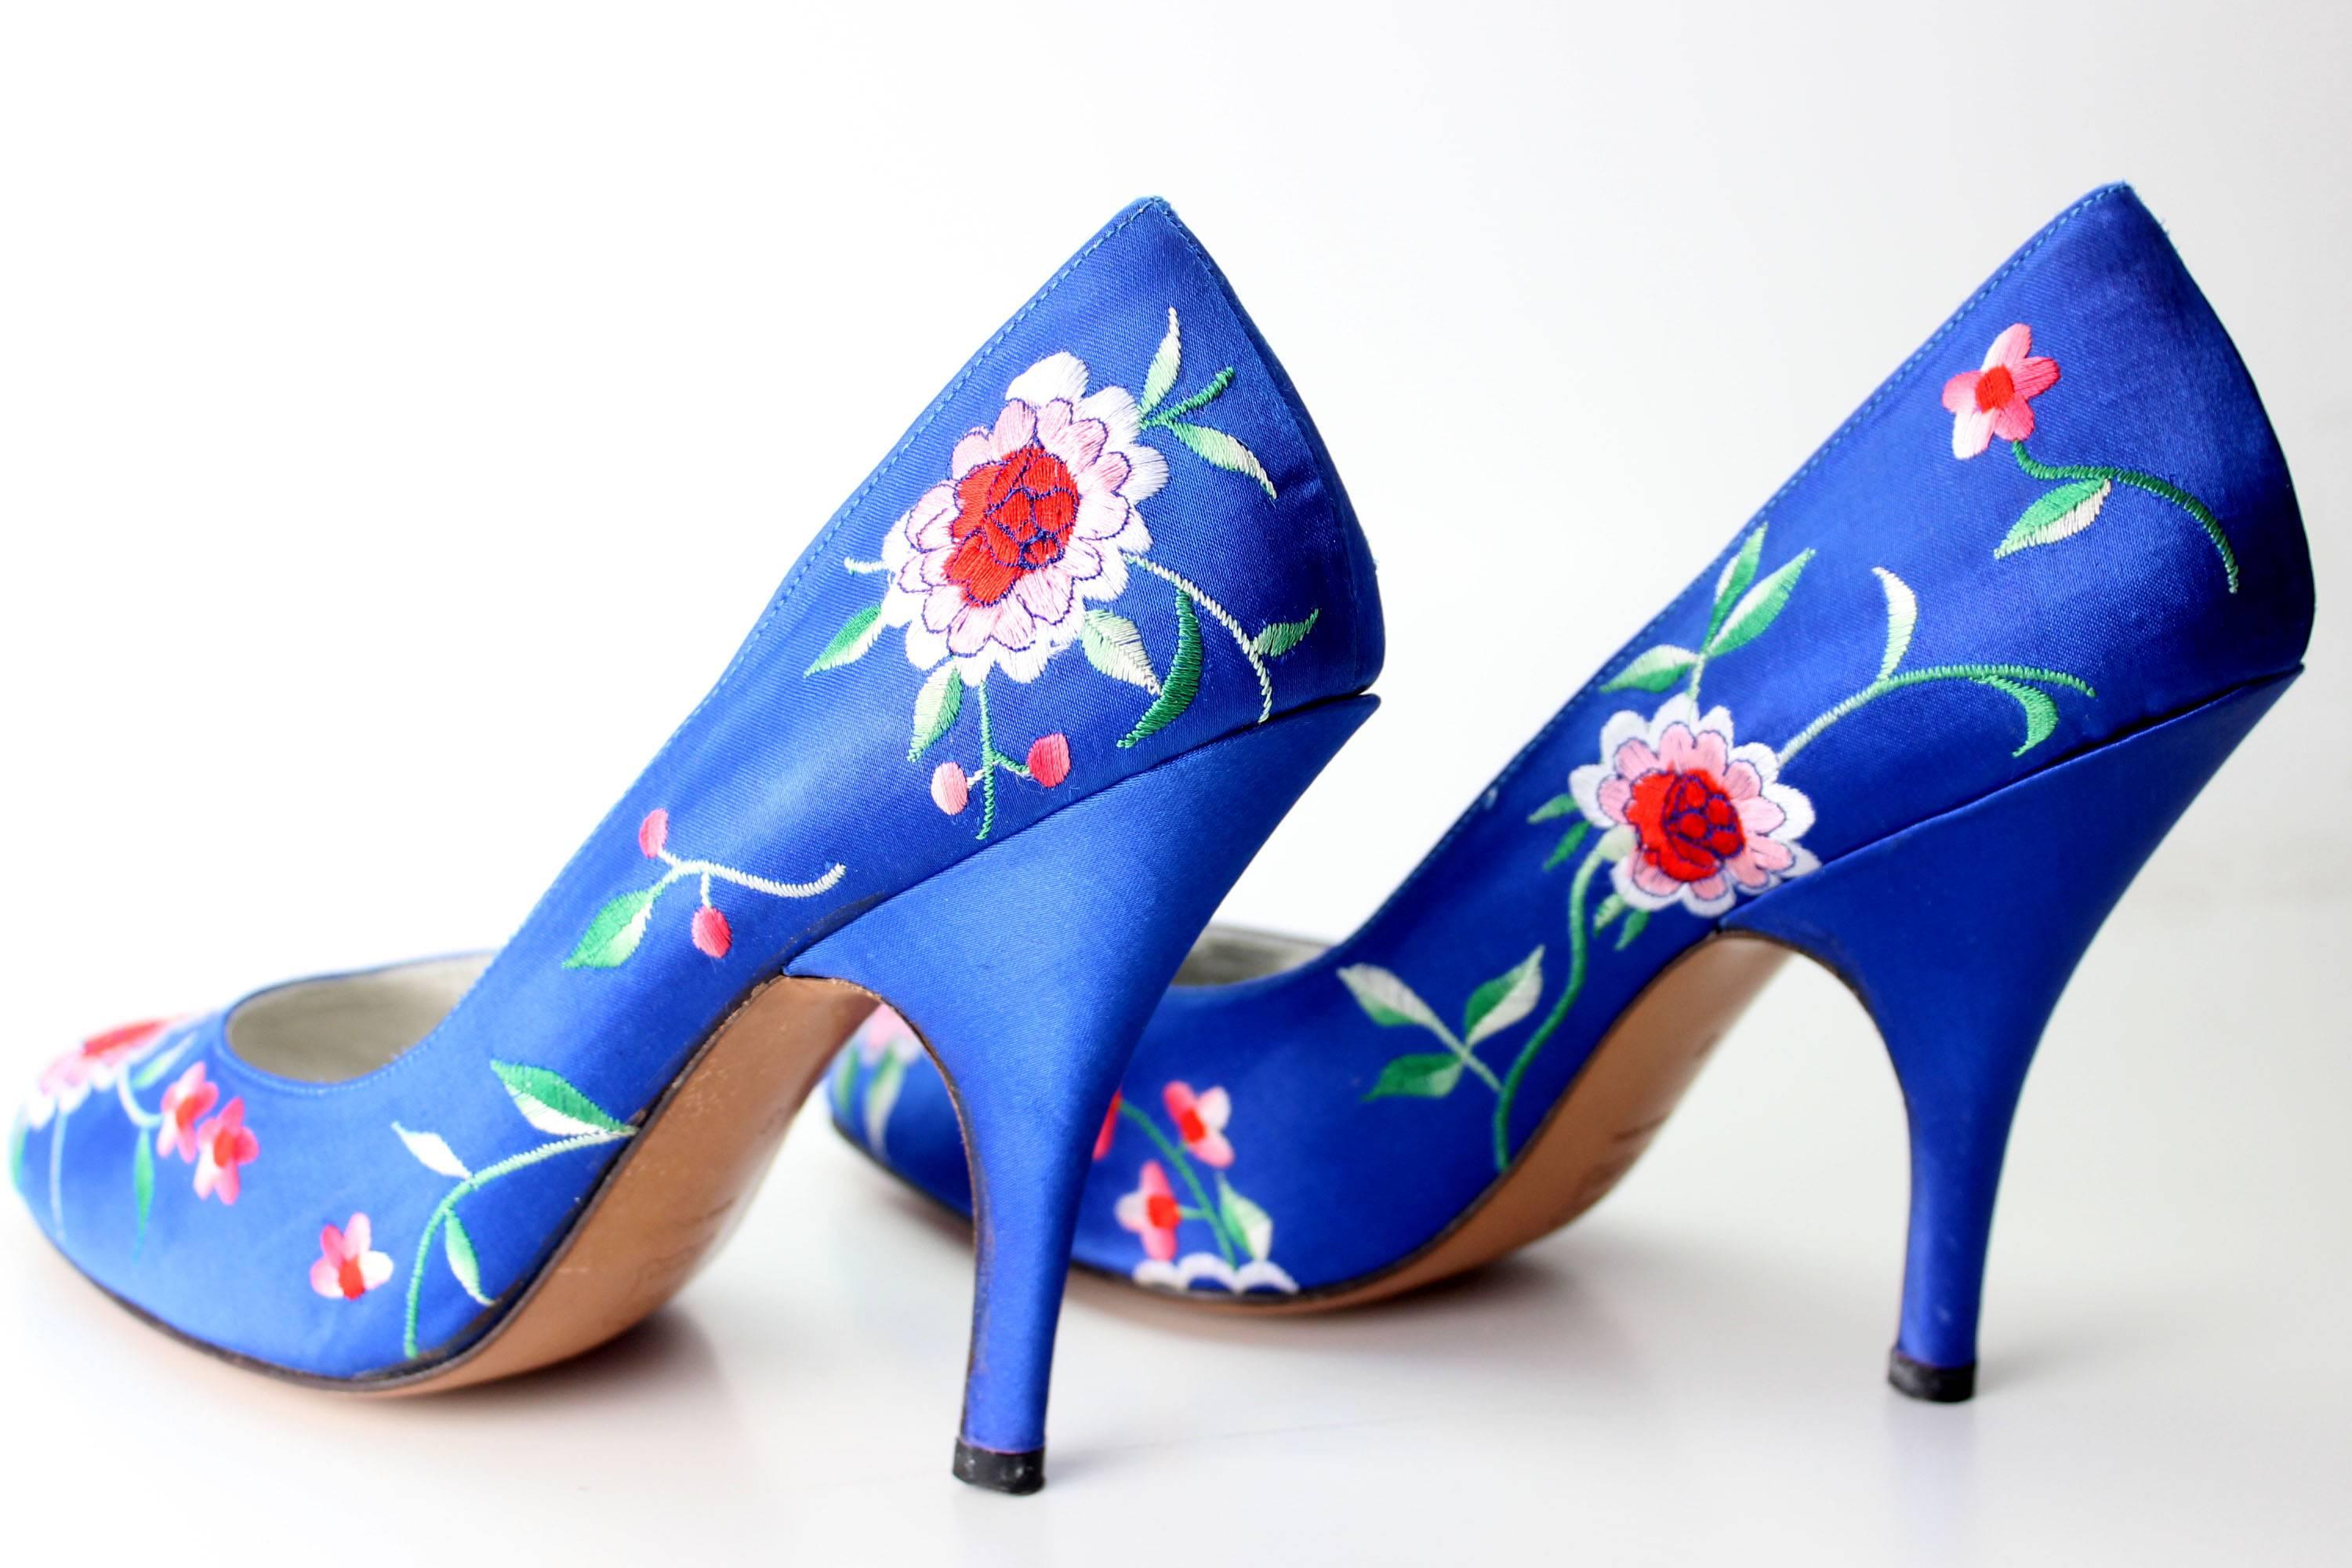 Norma Kamali Vintage Blue Satin Embroidered Floral Pumps 5